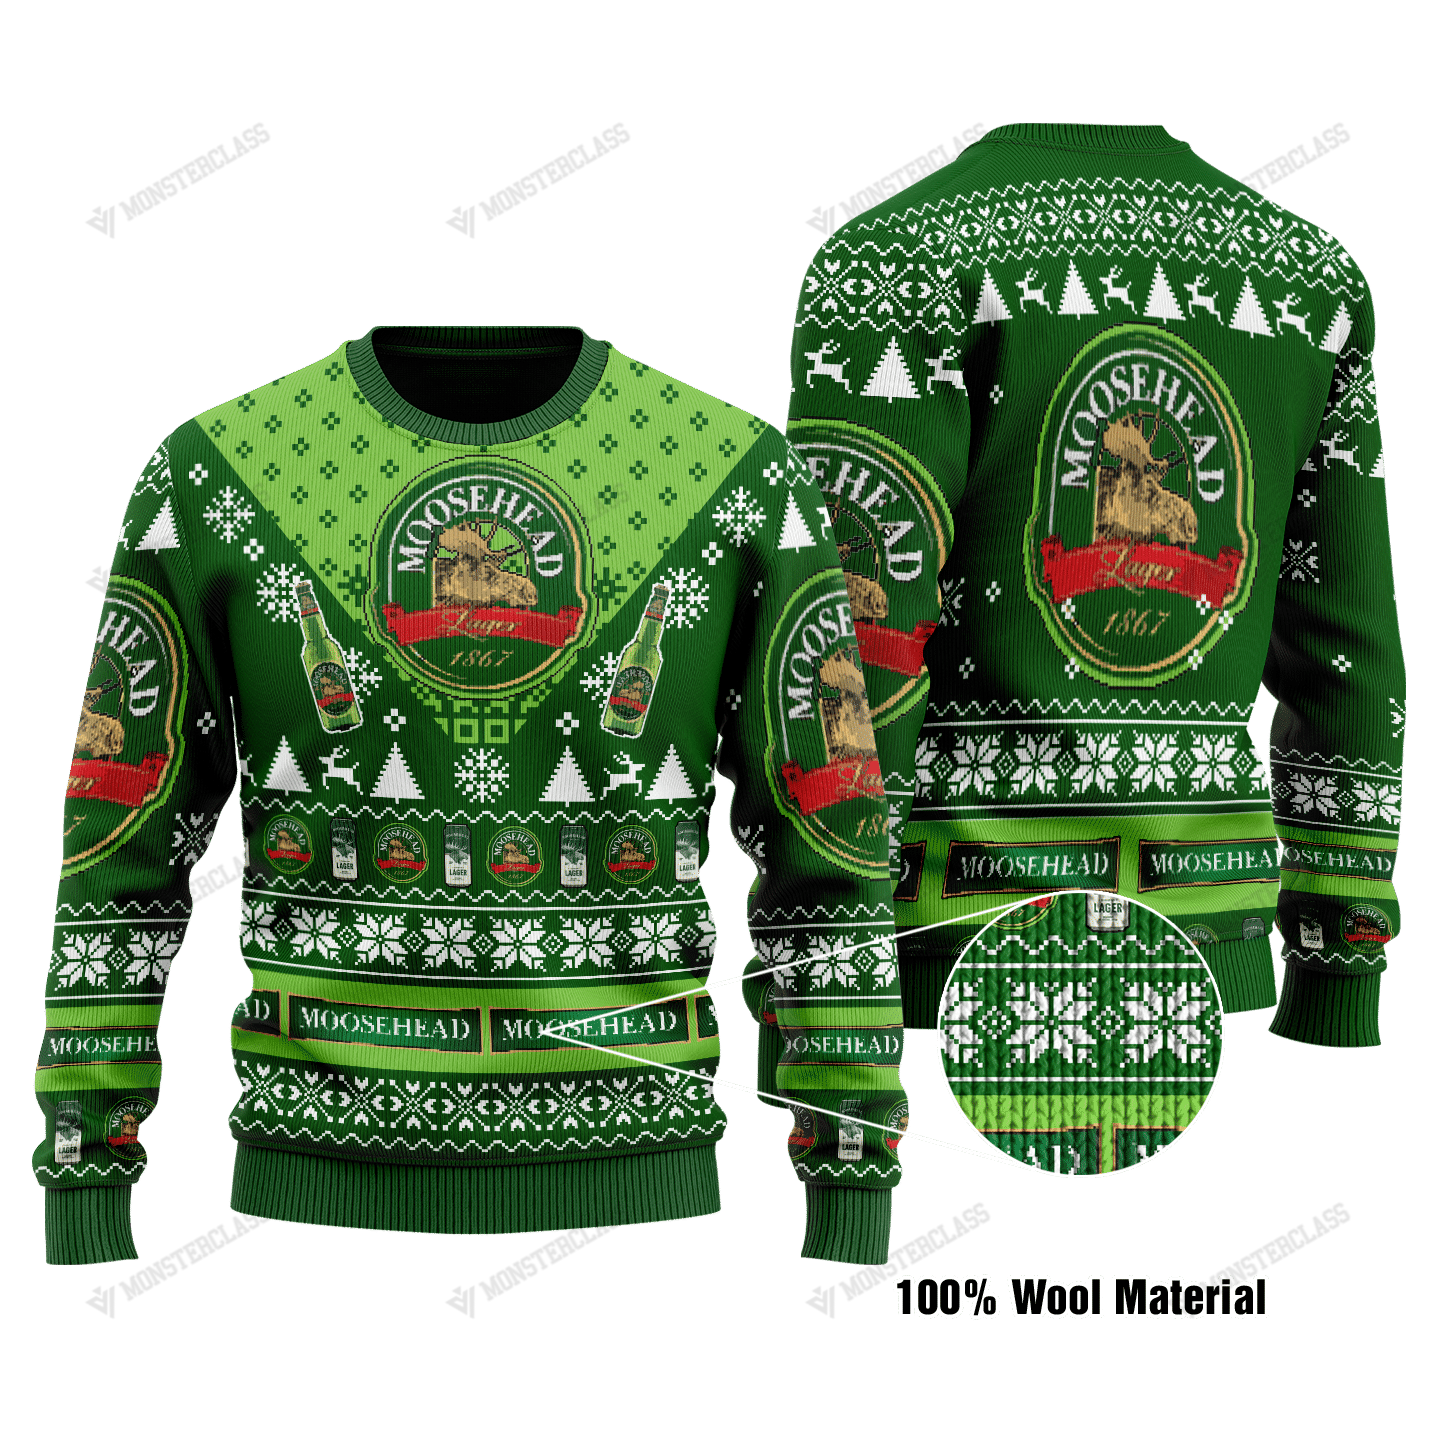 Moosehead Lager beer christmas sweater